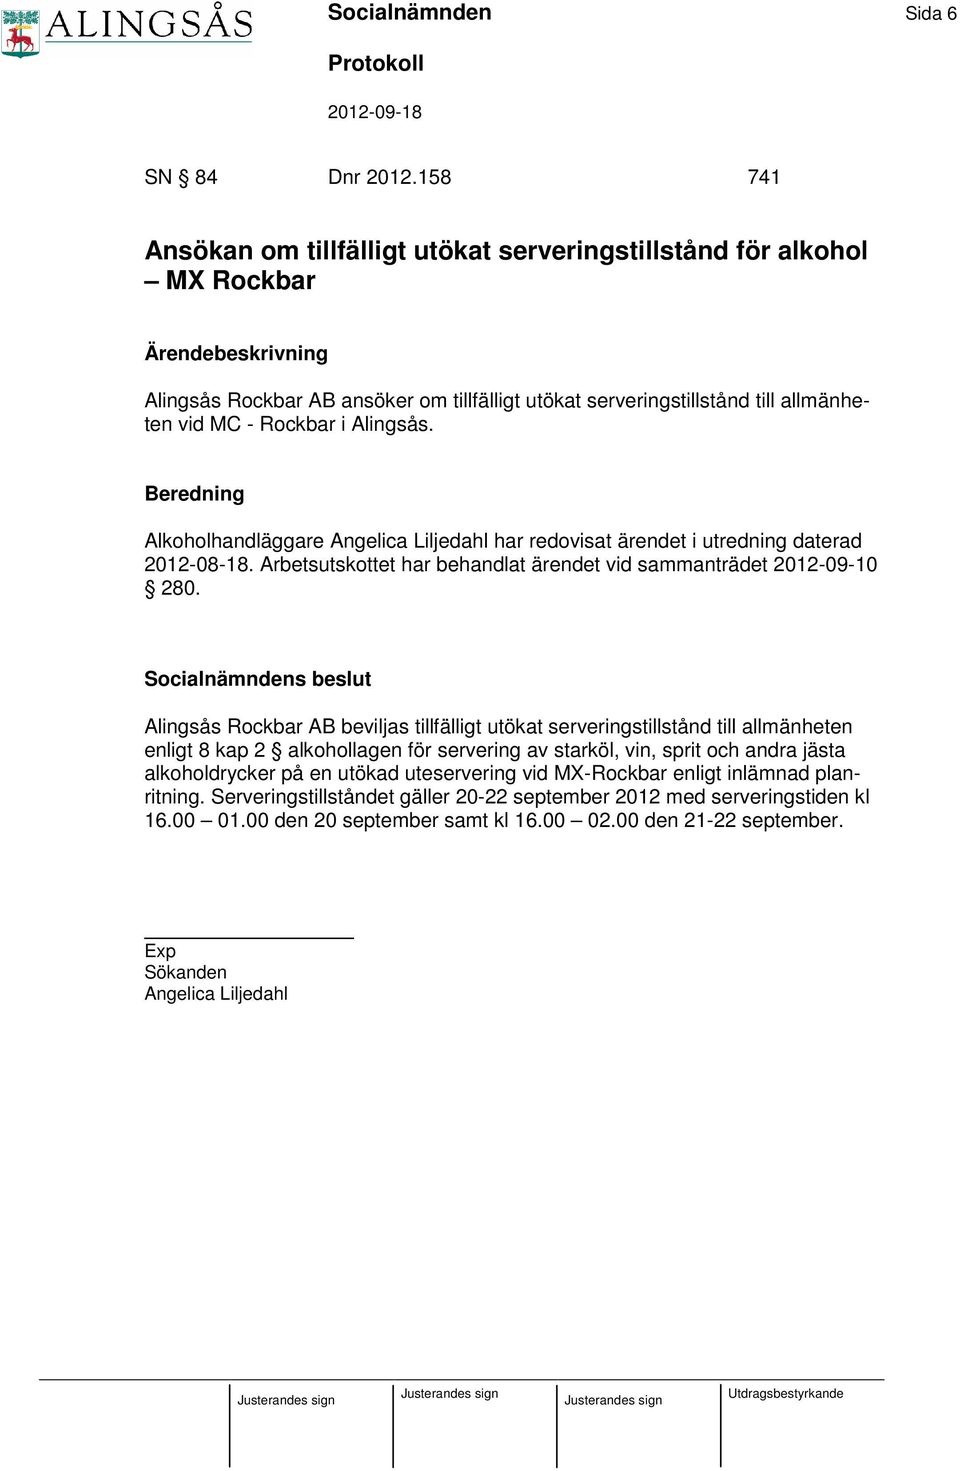 Rockbar i Alingsås. Beredning Alkoholhandläggare Angelica Liljedahl har redovisat ärendet i utredning daterad 2012-08-18. Arbetsutskottet har behandlat ärendet vid sammanträdet 2012-09-10 280.